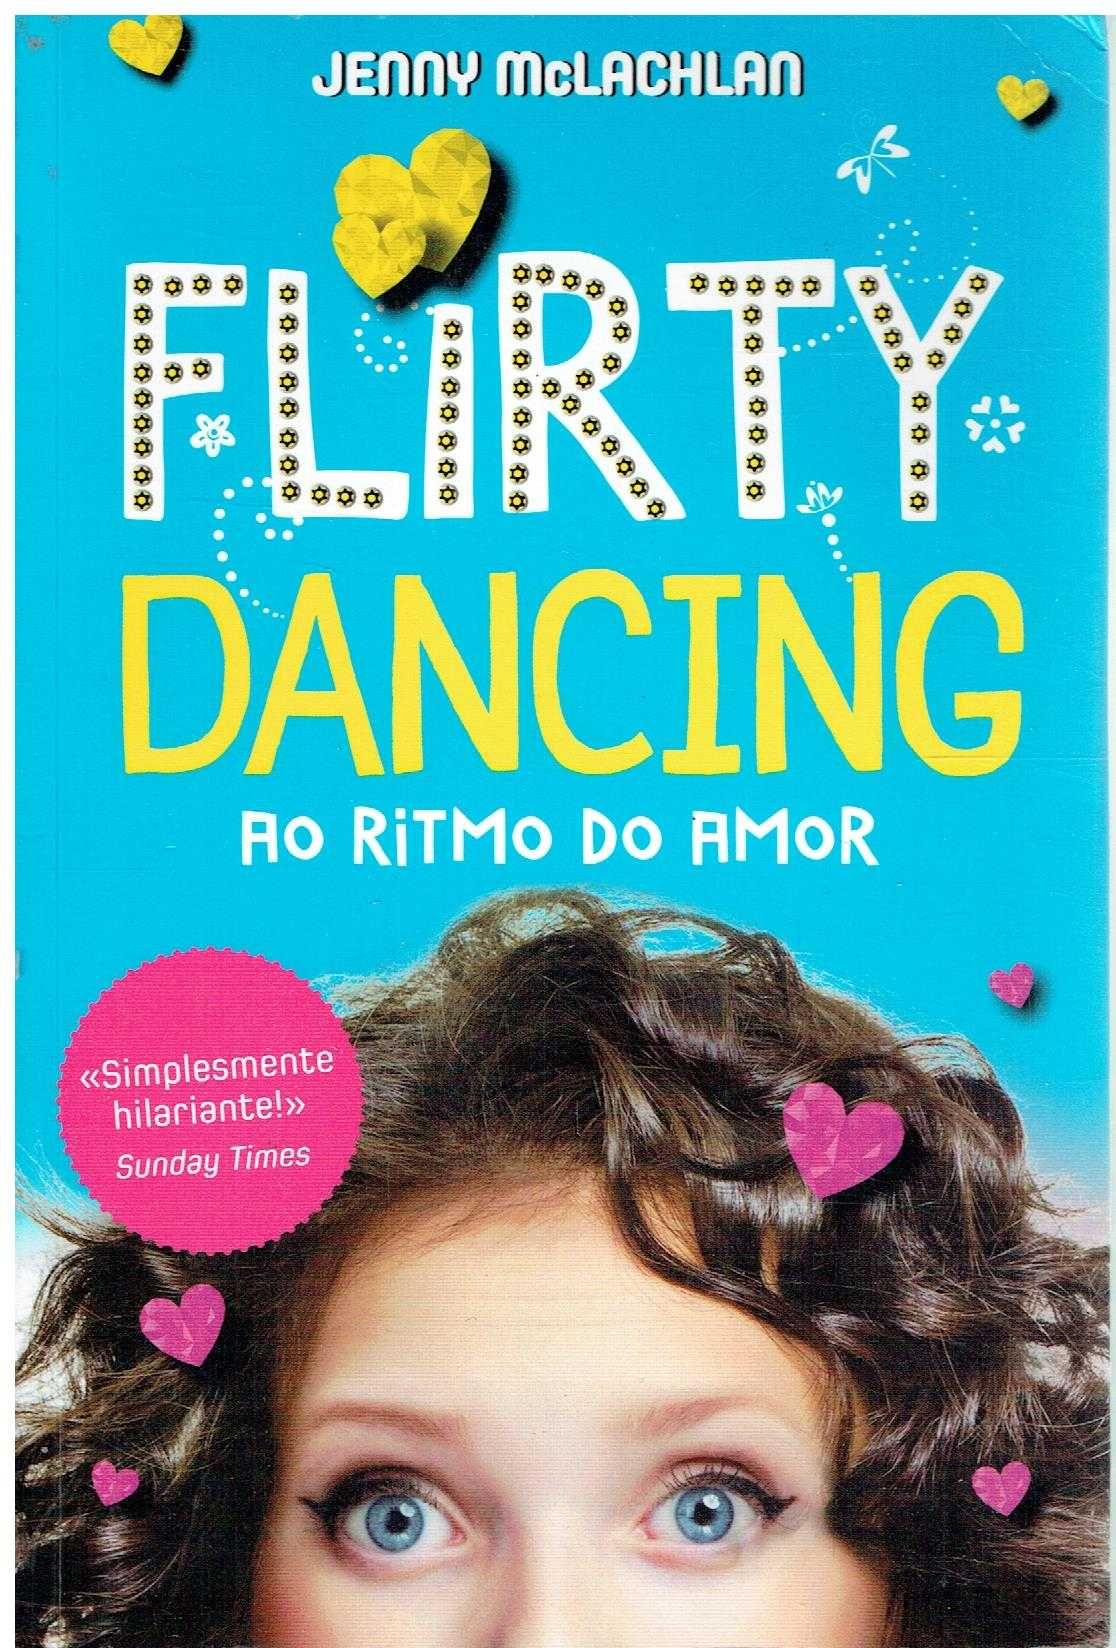 10526

Ao Ritmo do Amor
Flirty Dancing
de Jenny Mclachlan